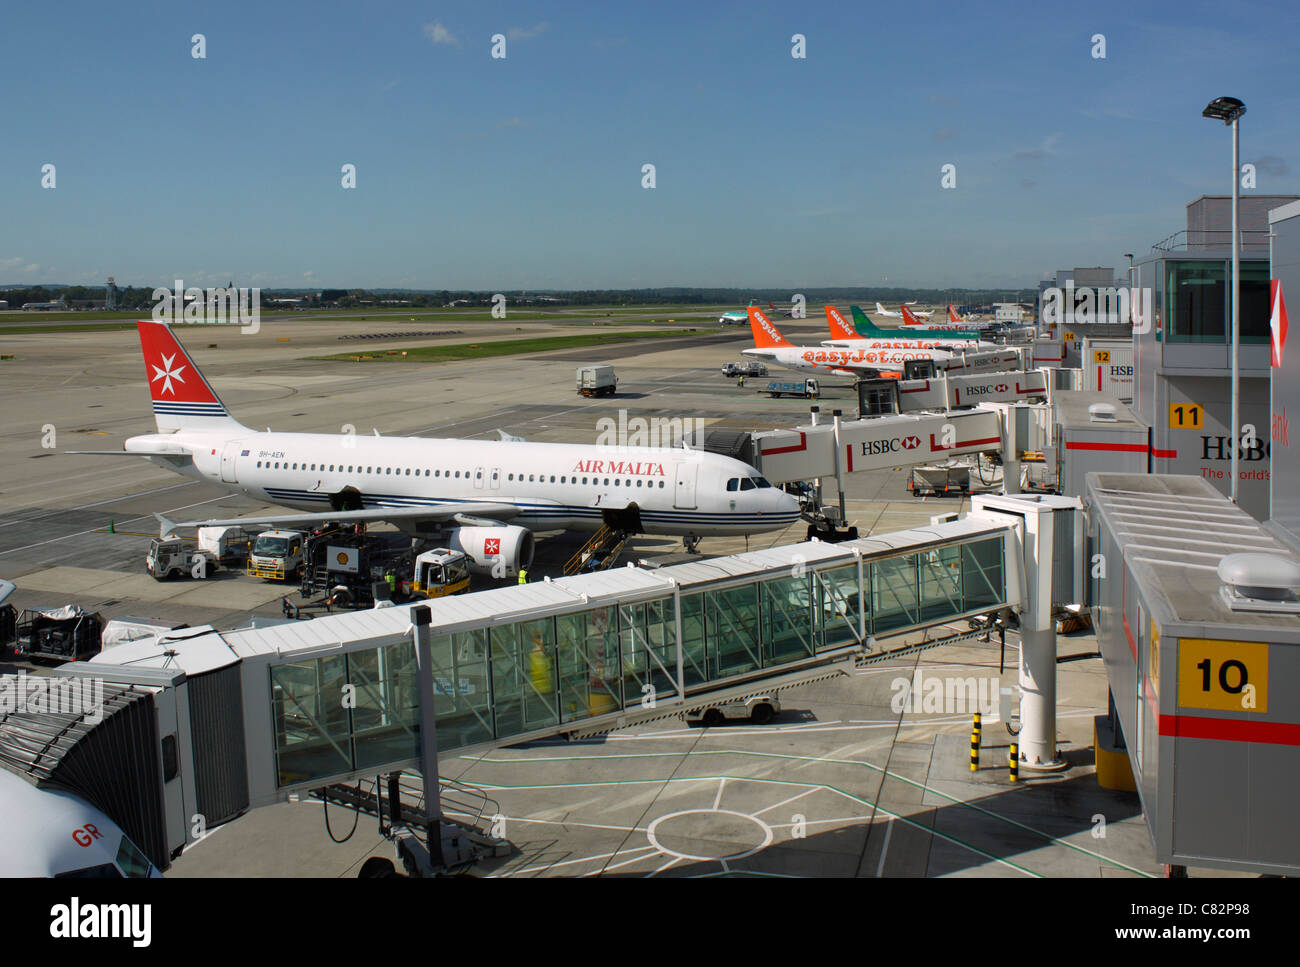 Molti aerei parcheggiati a terra presso l'aeroporto di Gatwick. Aerei a reazione trasporto aereo Foto Stock